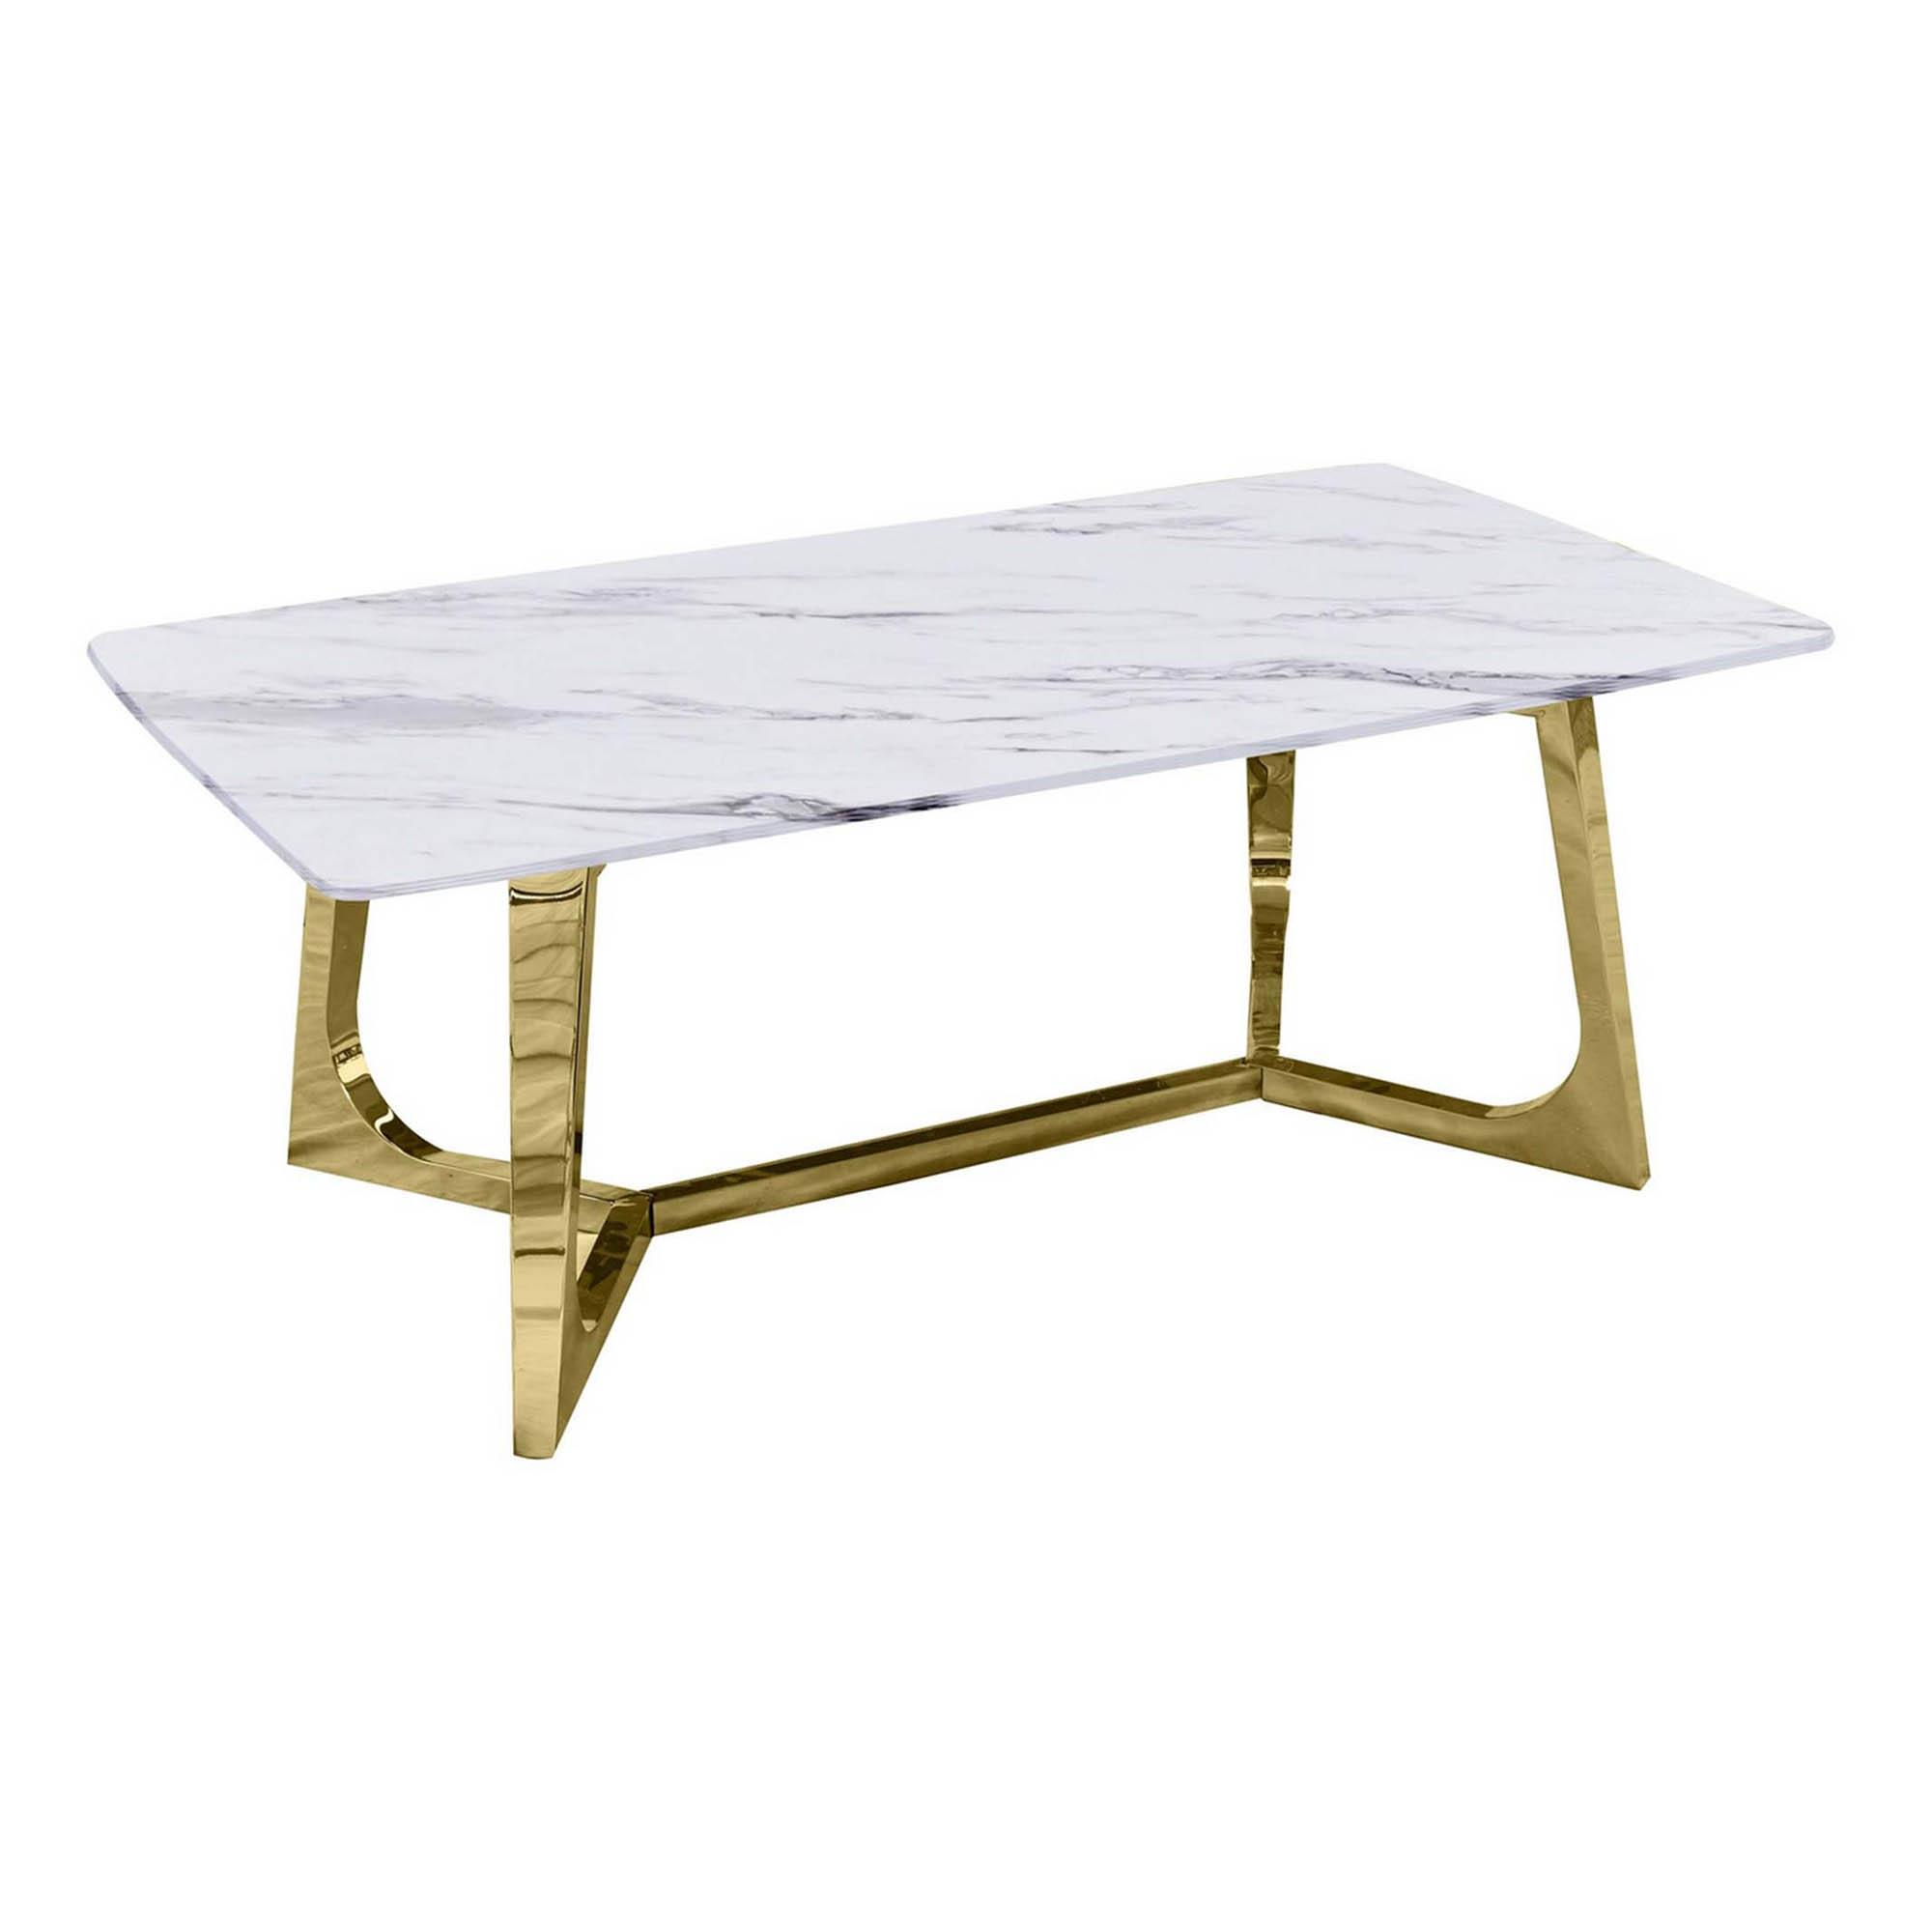 OPERA - Table basse rectangulaire design effet marbre blanc et doré